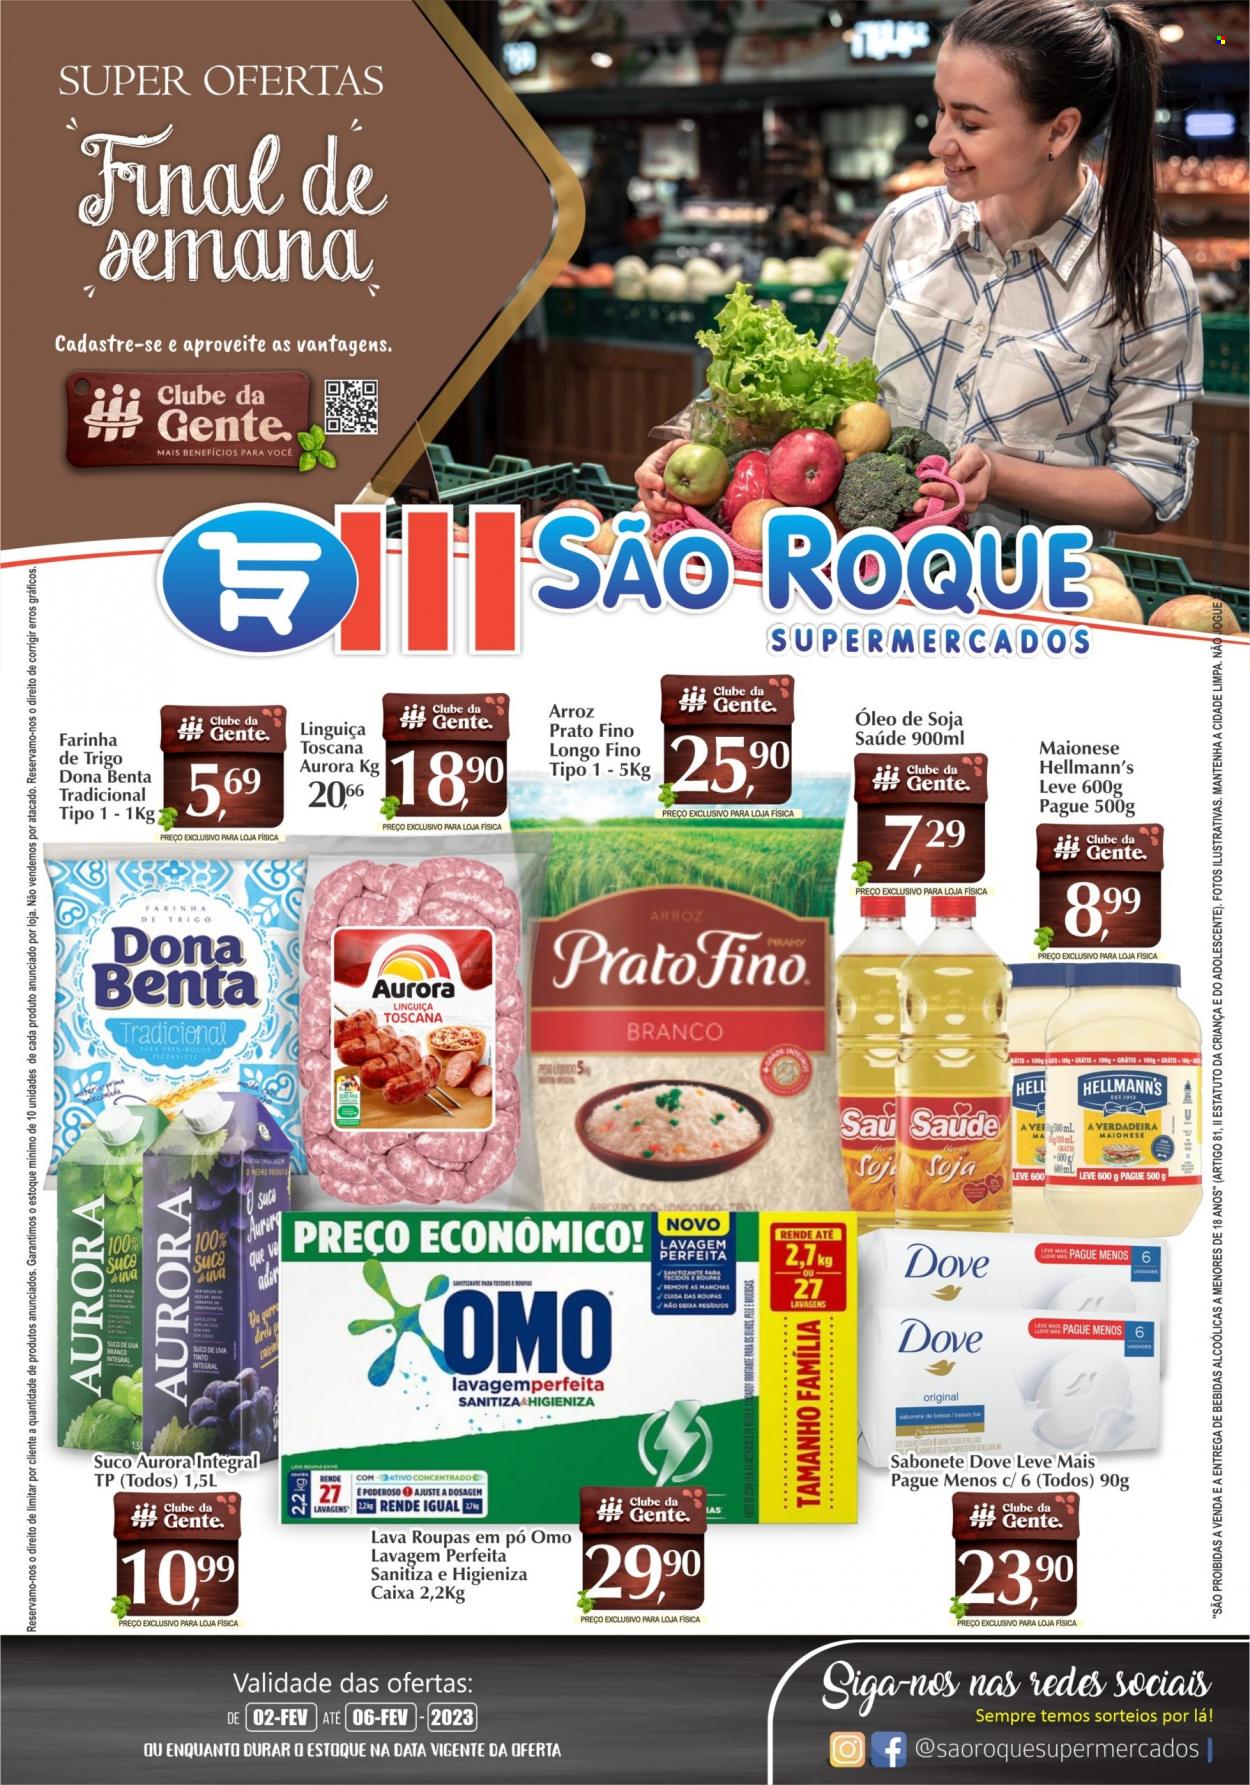 Encarte São Roque Supermercados  - 02.02.2023 - 06.02.2023.